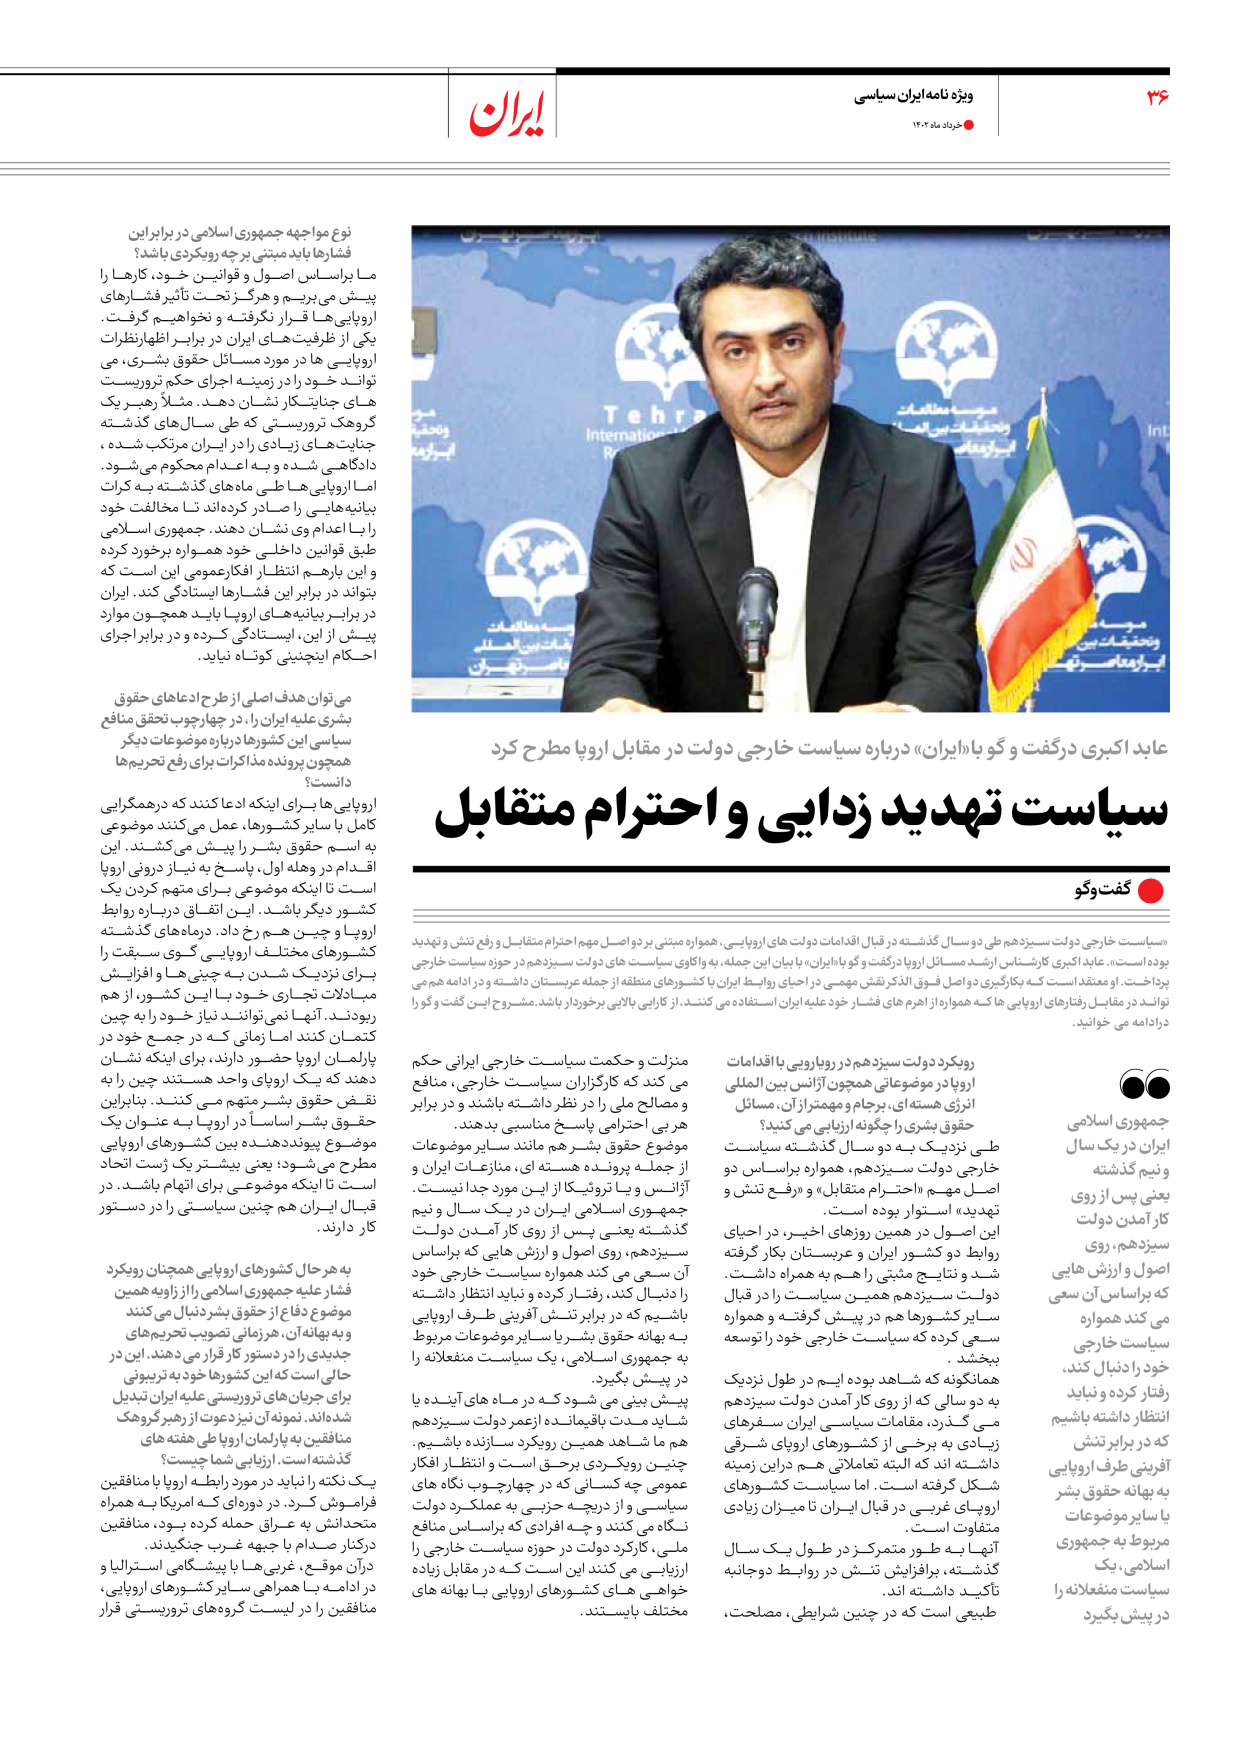 روزنامه ایران - ویژه نامه ویژه سالگرد انتخابات ریاست جمهوری - ۲۸ خرداد ۱۴۰۲ - صفحه ۳۶